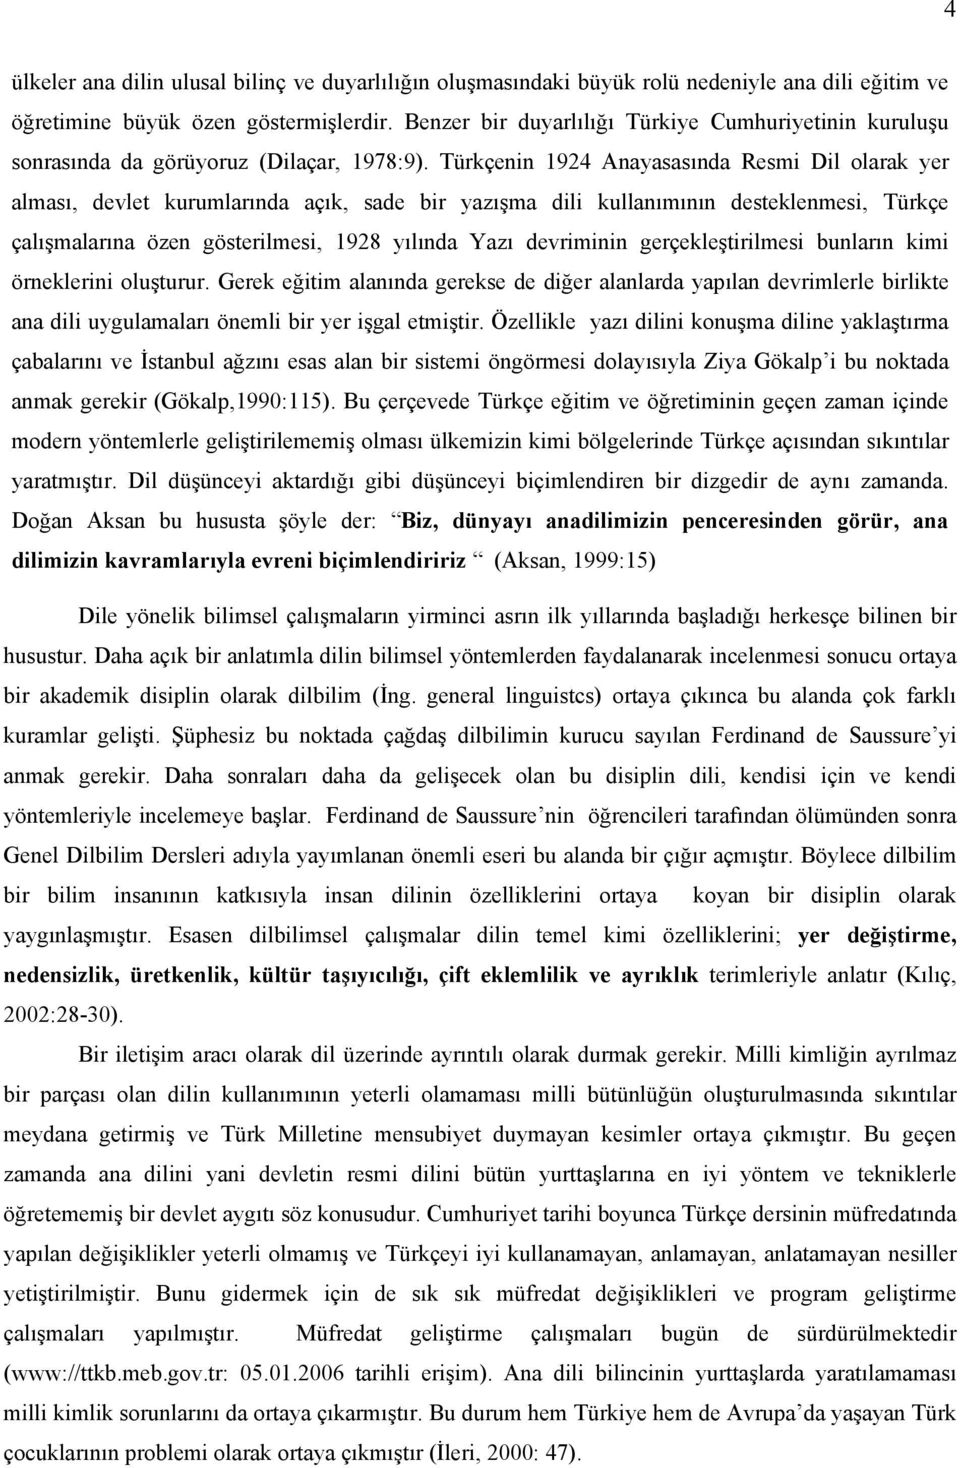 Türkçenin 1924 Anayasasında Resmi Dil olarak yer alması, devlet kurumlarında açık, sade bir yazışma dili kullanımının desteklenmesi, Türkçe çalışmalarına özen gösterilmesi, 1928 yılında Yazı